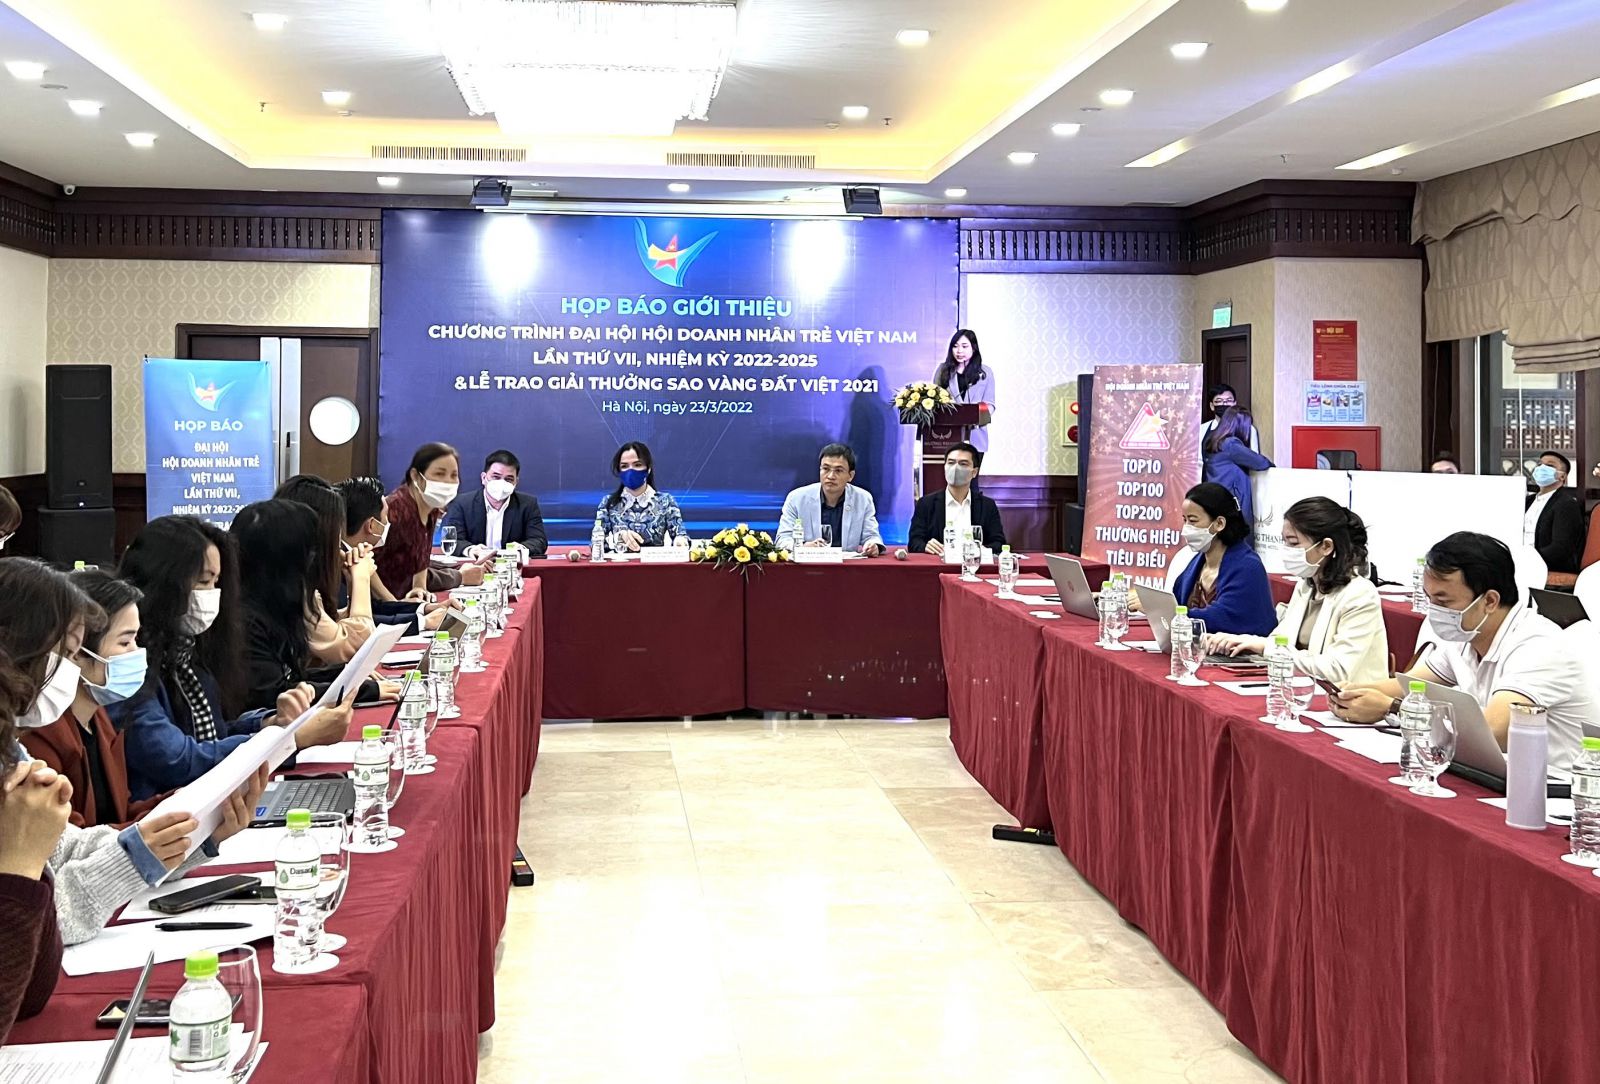 Họp báo giới thiệu chương trình Lễ trao Giải thưởng Sao Vàng đất Việt 2021